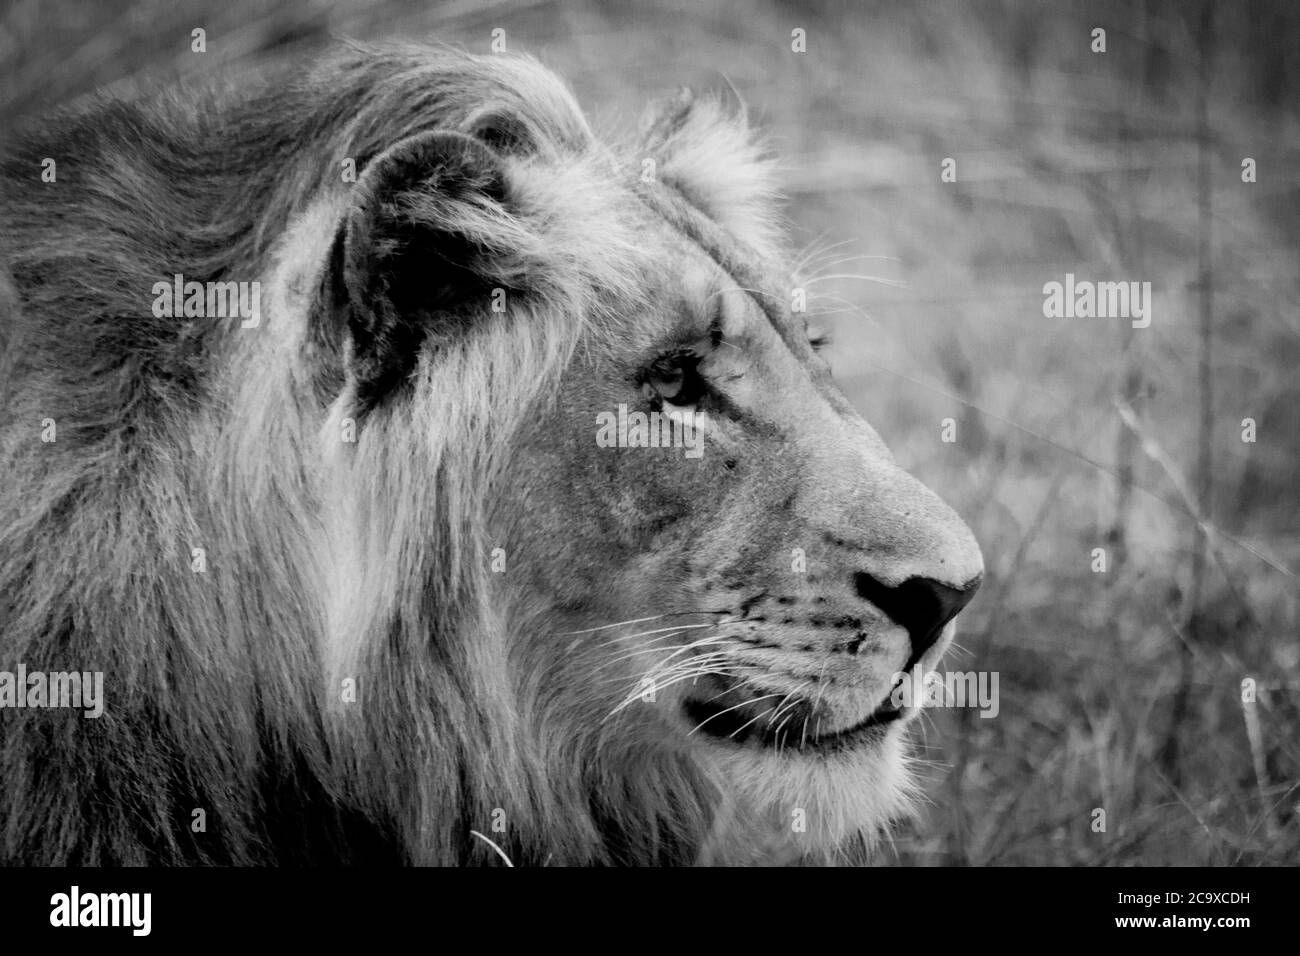 Nahaufnahme des Kopfes eines jungen Löwen in der afrikanischen Savanne, wo die sich entwickelnde Mähne zu sehen ist (schwarz und weiß). Stockfoto